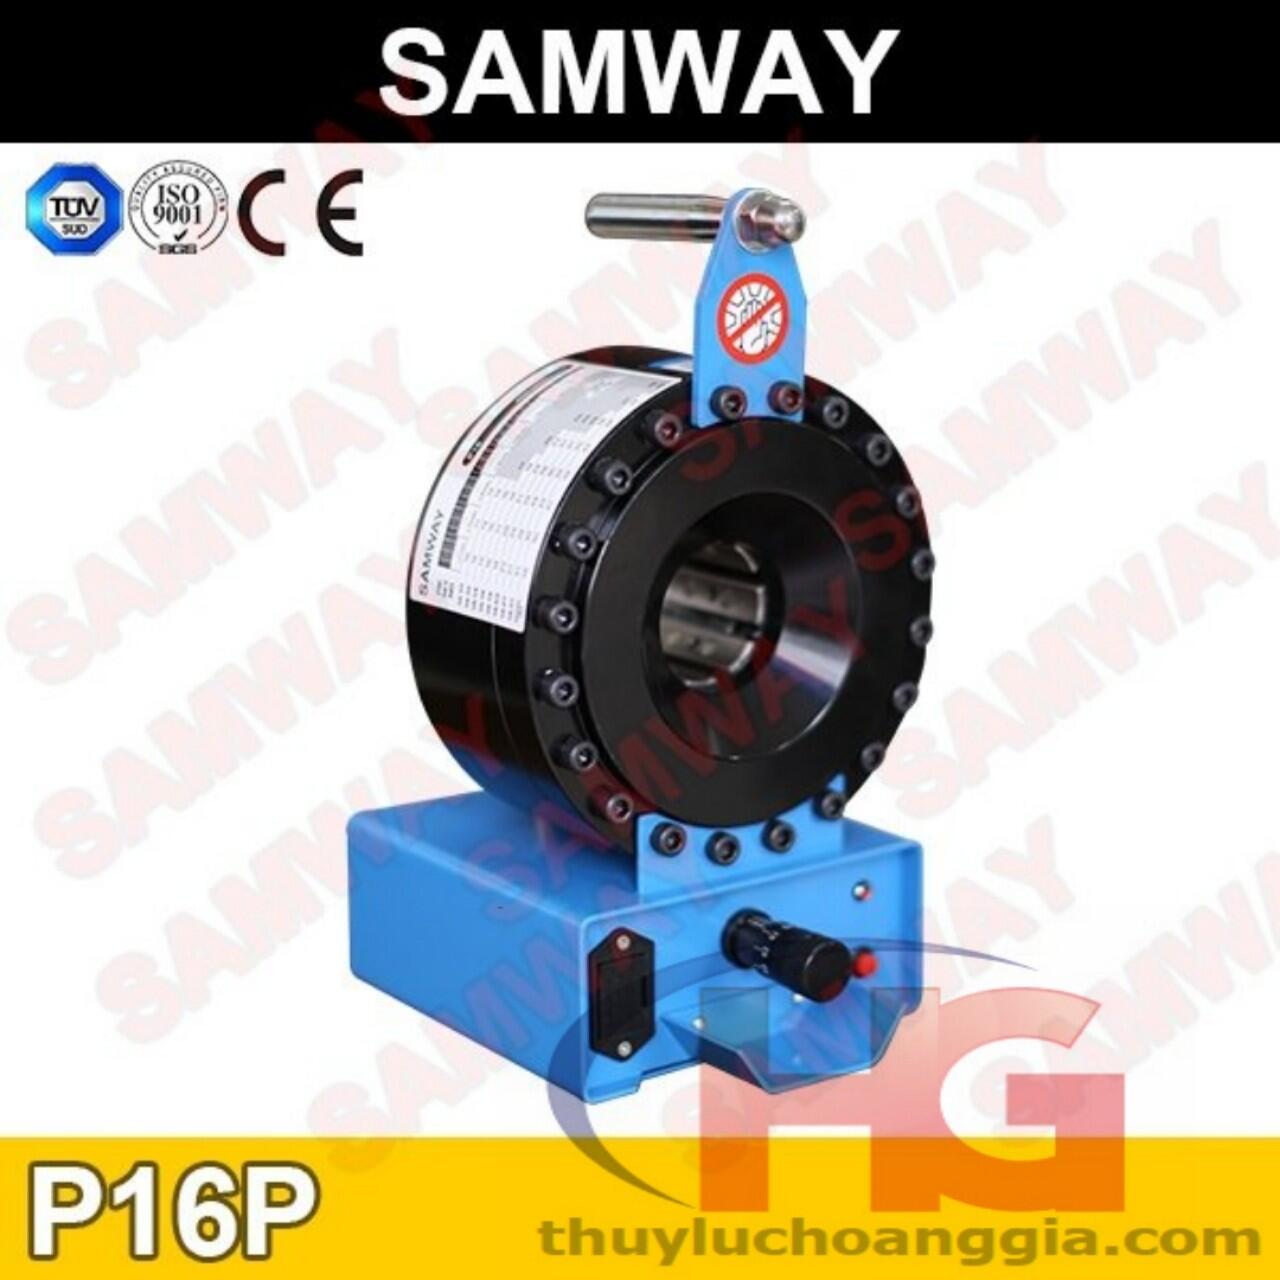 Mách bạn công ty bán máy ép ống thủy lực SAMWAY P16P ở quận 9